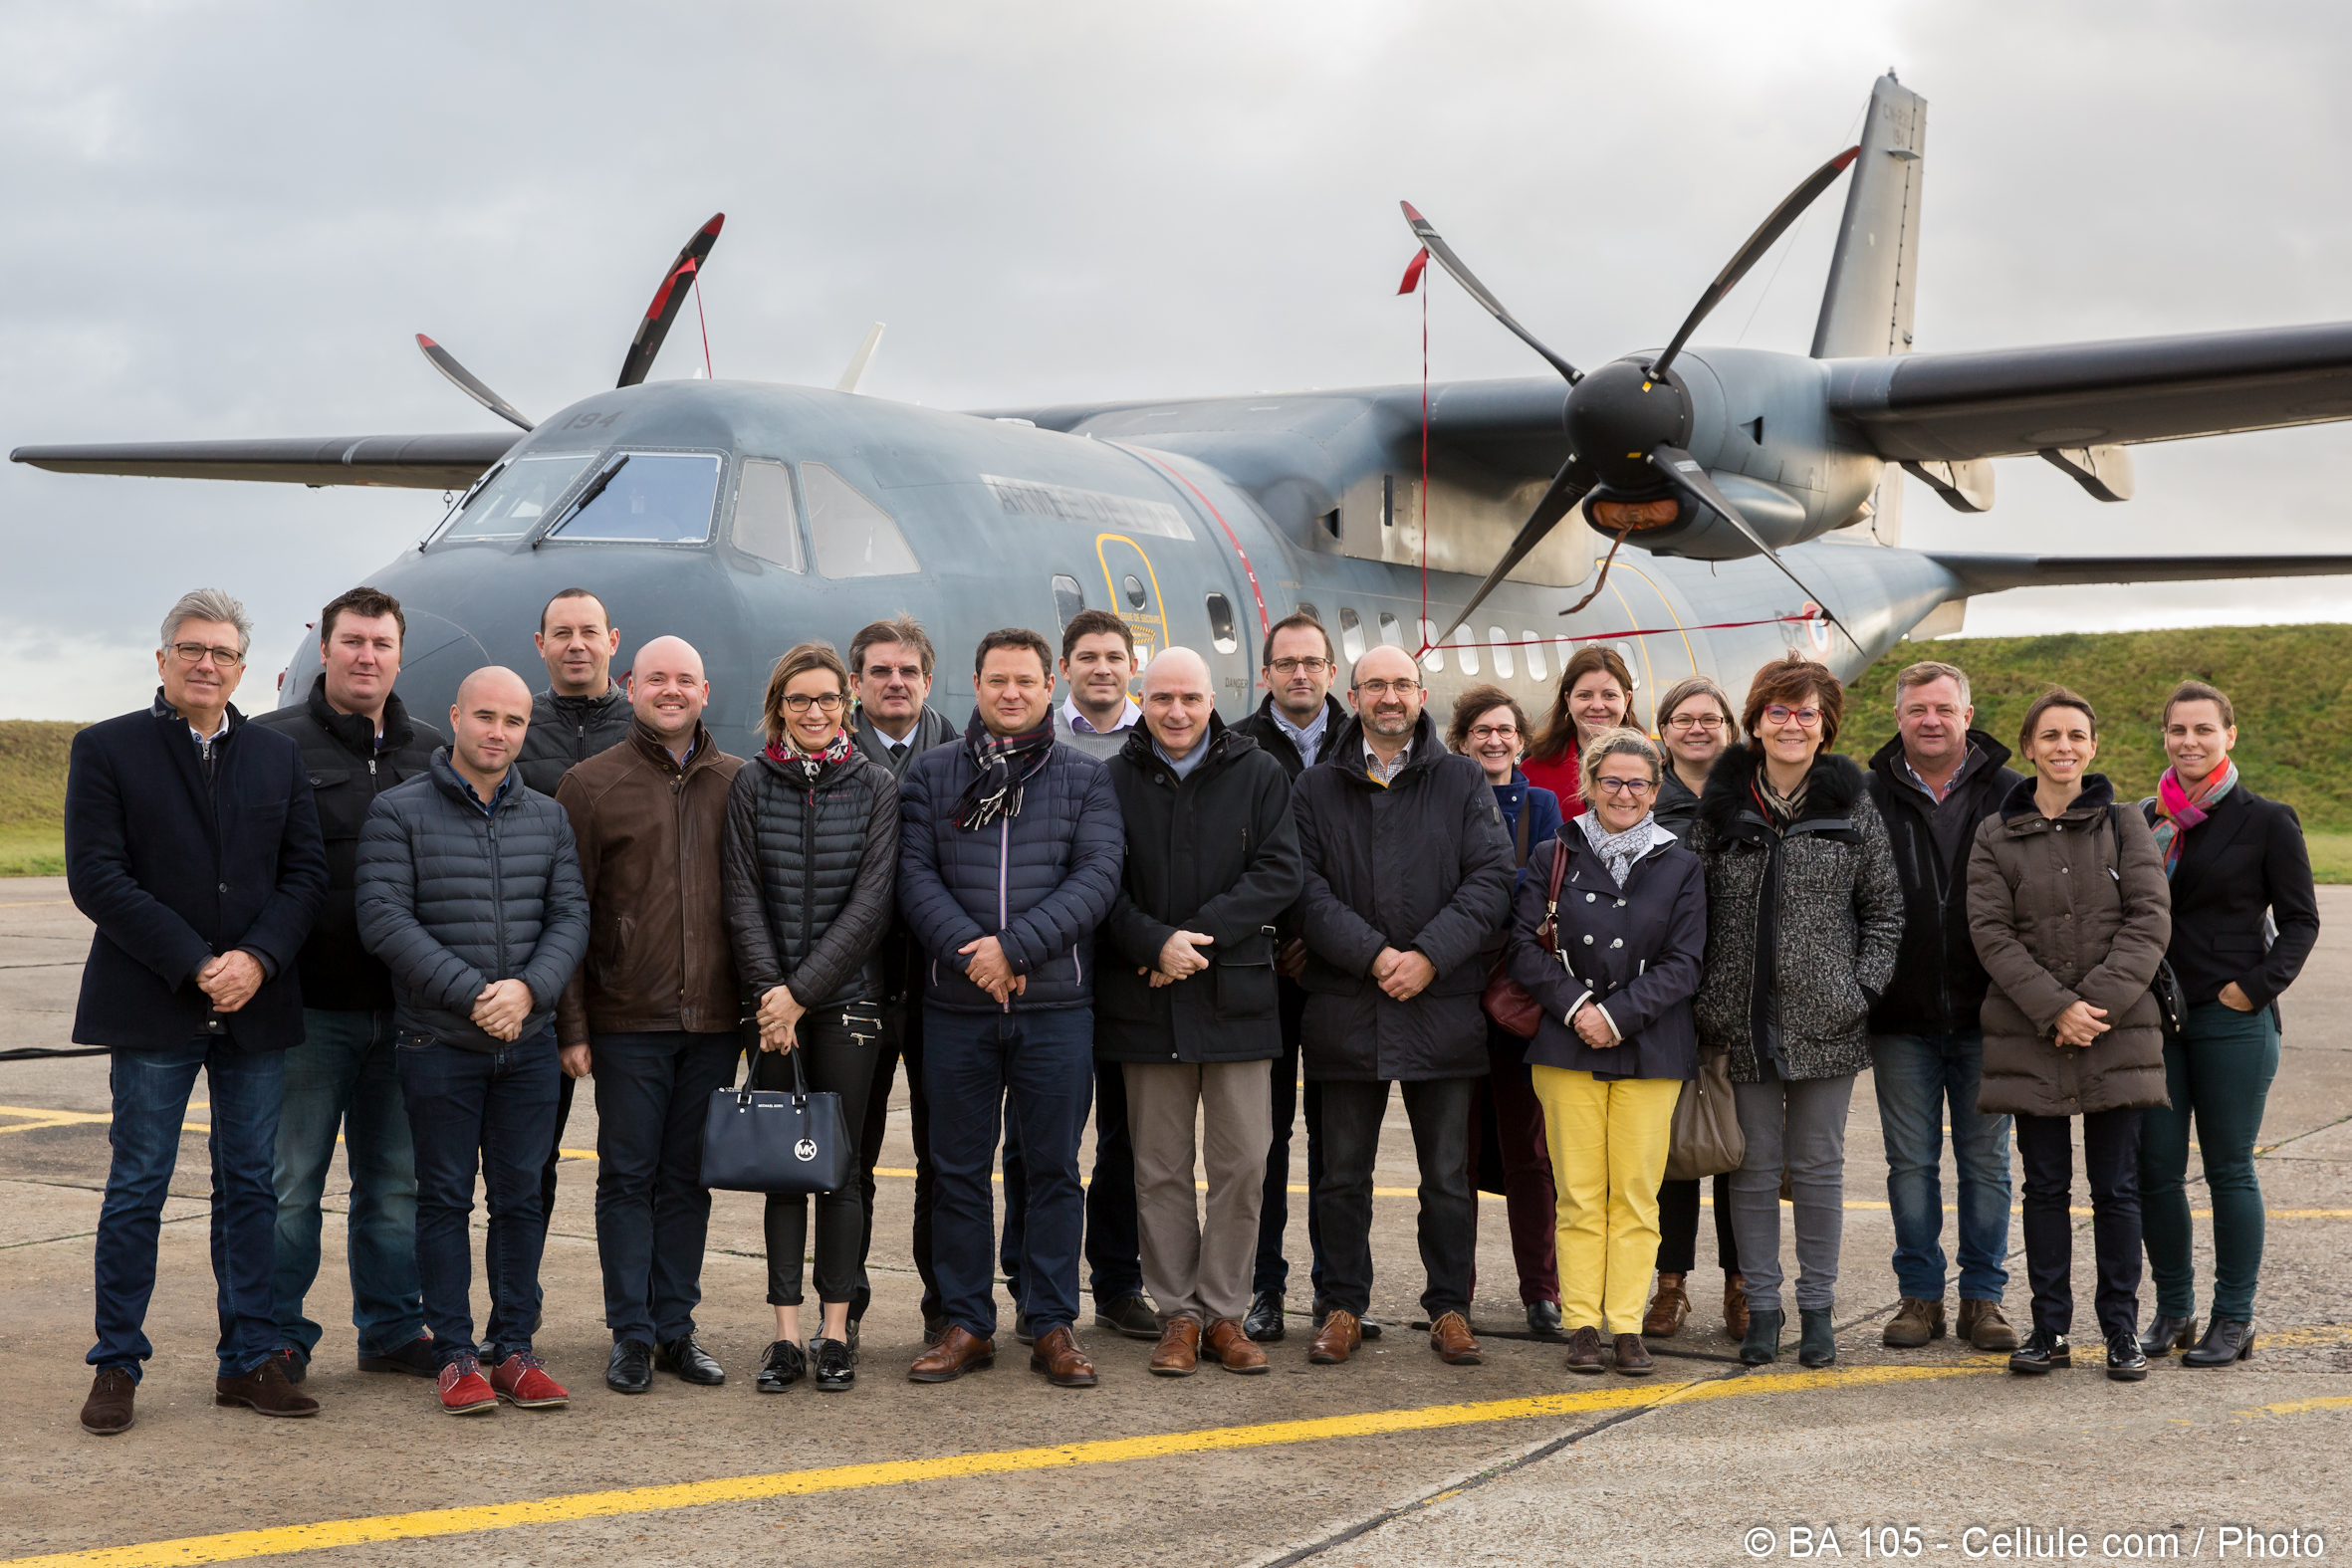 Une visite de la base aérienne 105 "Commandant Viot" a été organisée le 23 novembre 2017 au profit du Groupement Interprofessionnel Gaillon, Aubevoye, Les Andelys (GIGA) regroupant des chefs d'entreprises.